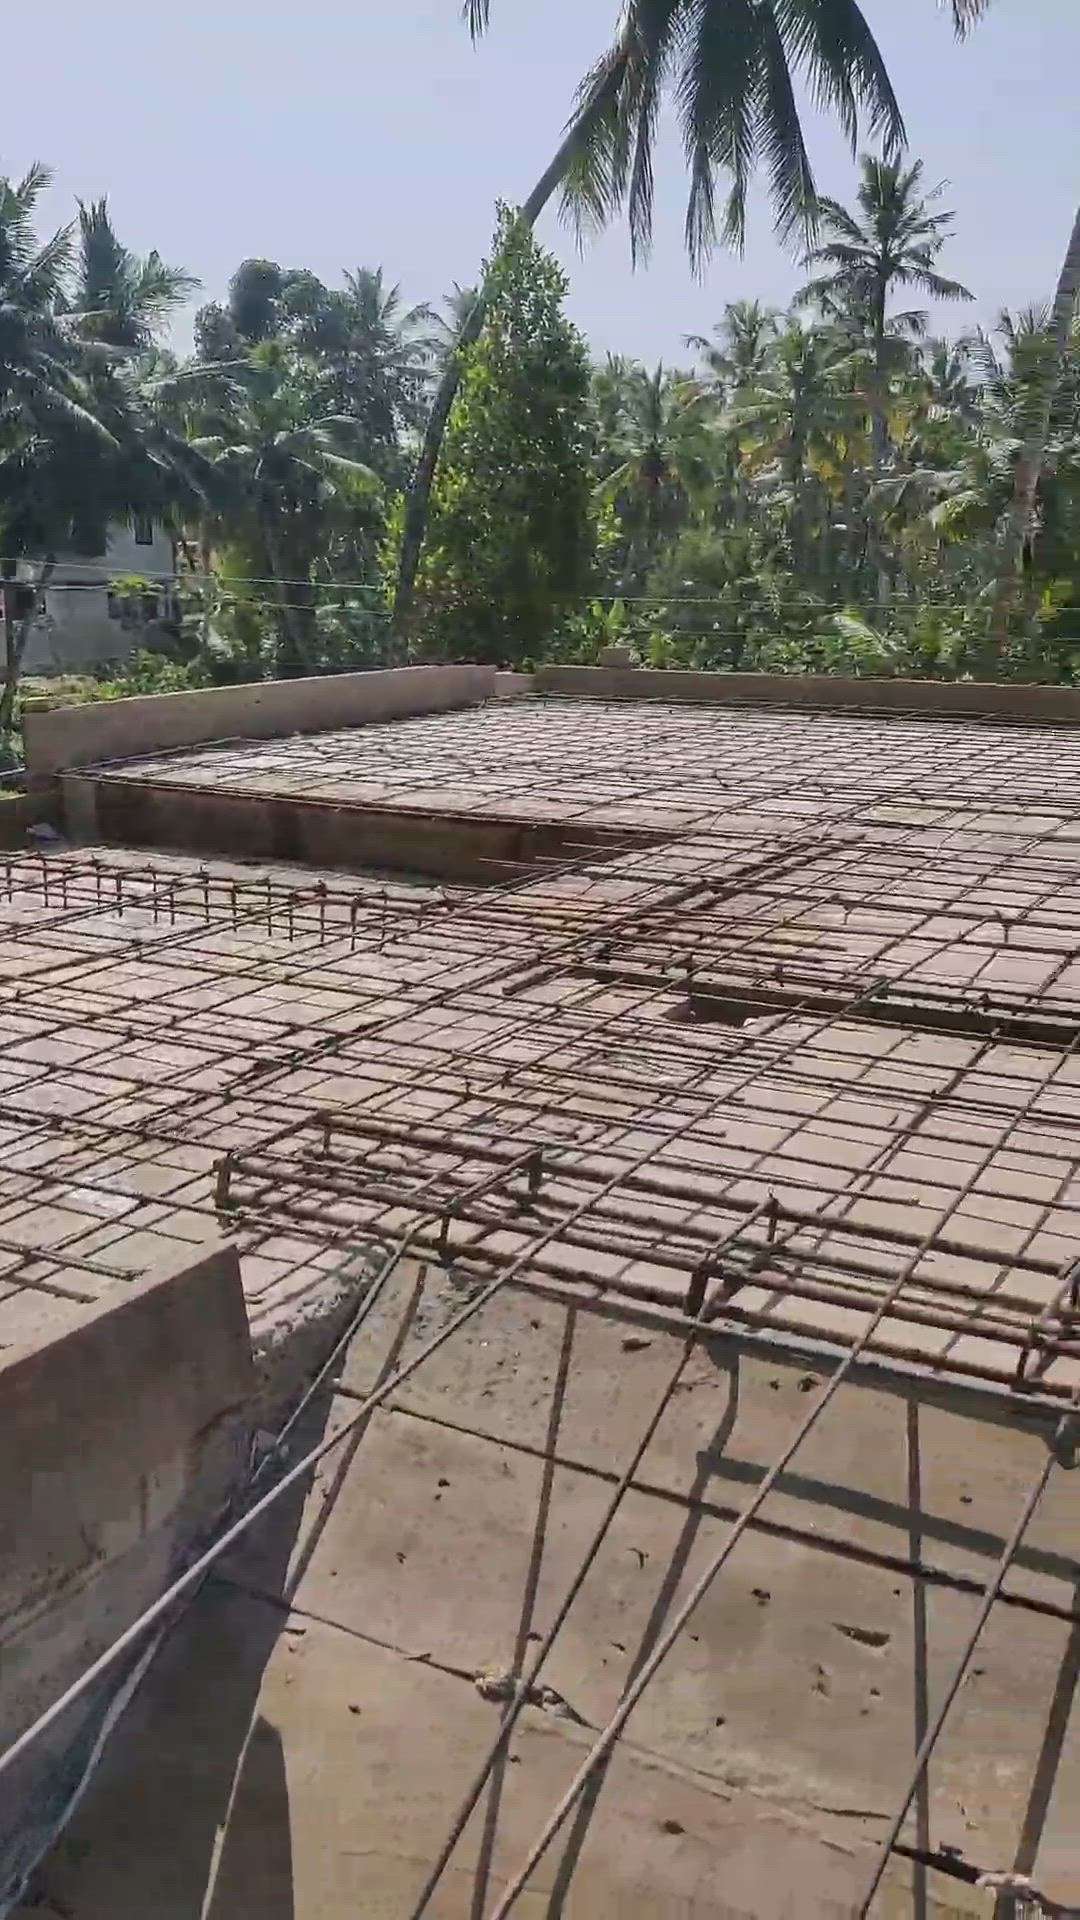 #arkbuildersanddevelopers #trivandrum #home